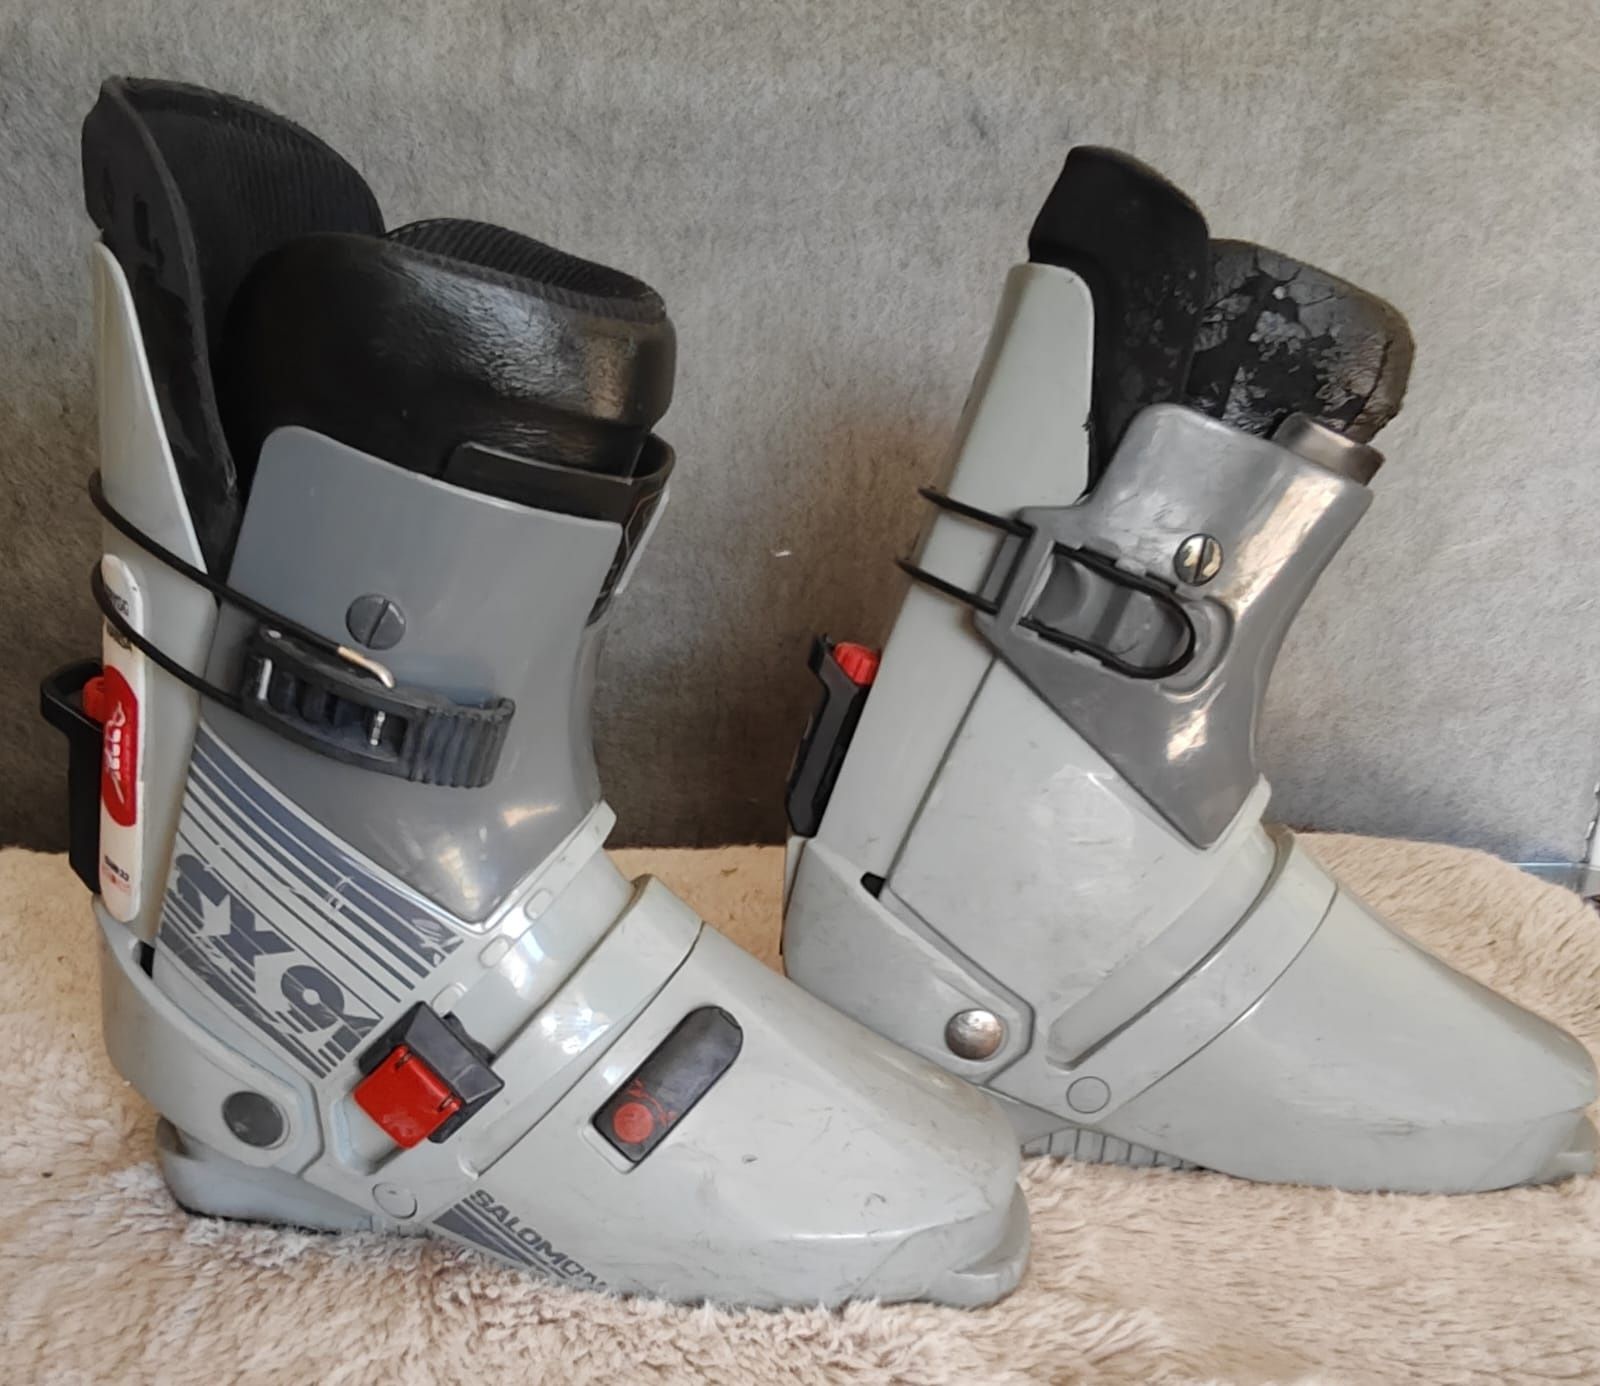 Salomon SX 91 buty narciarskie 345 - rozm 41